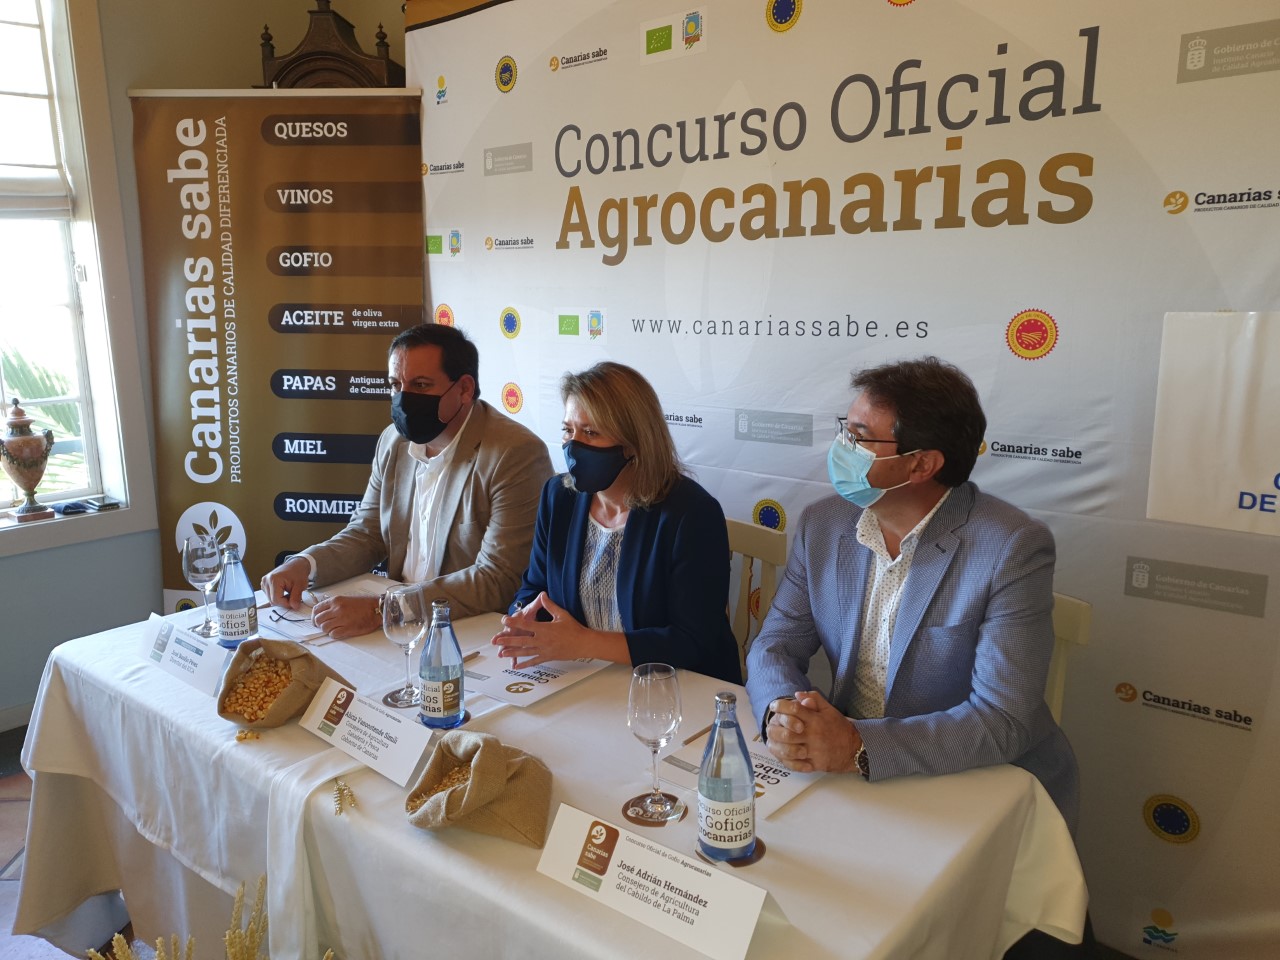 Concurso Oficial de Gofio Agrocanarias 2020